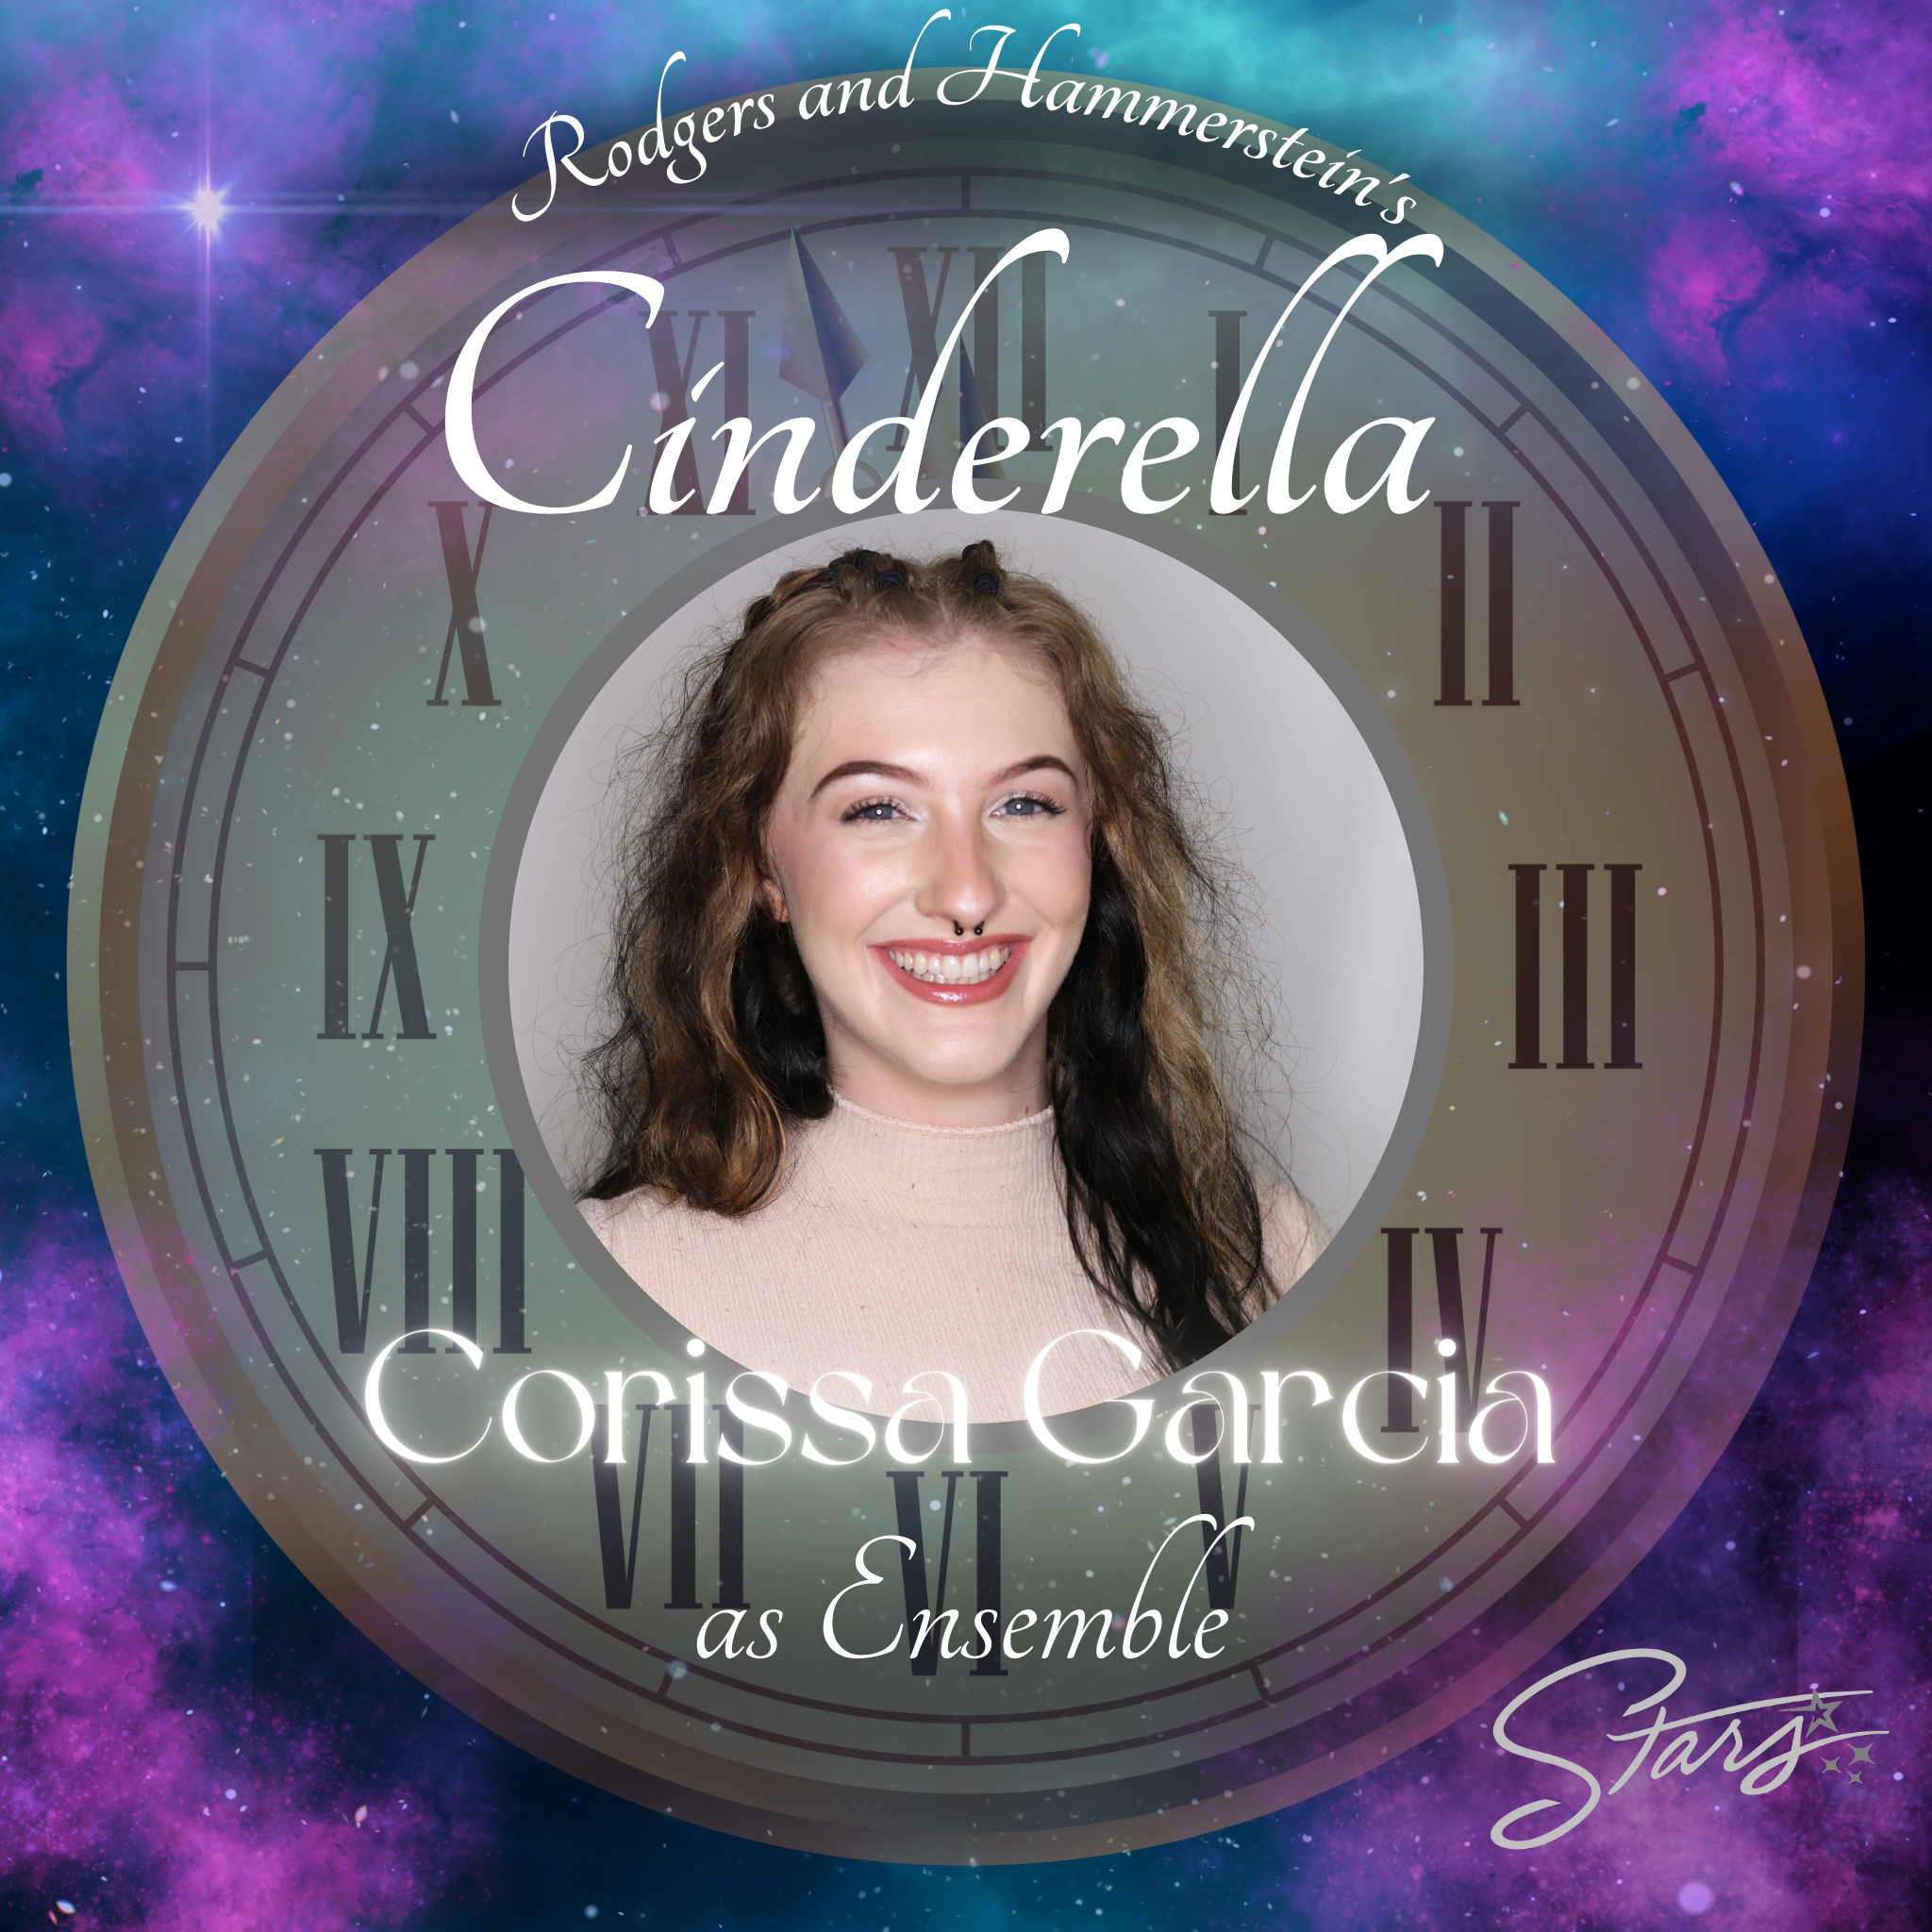 Corissa Garcia as Ensemble in Cinderella